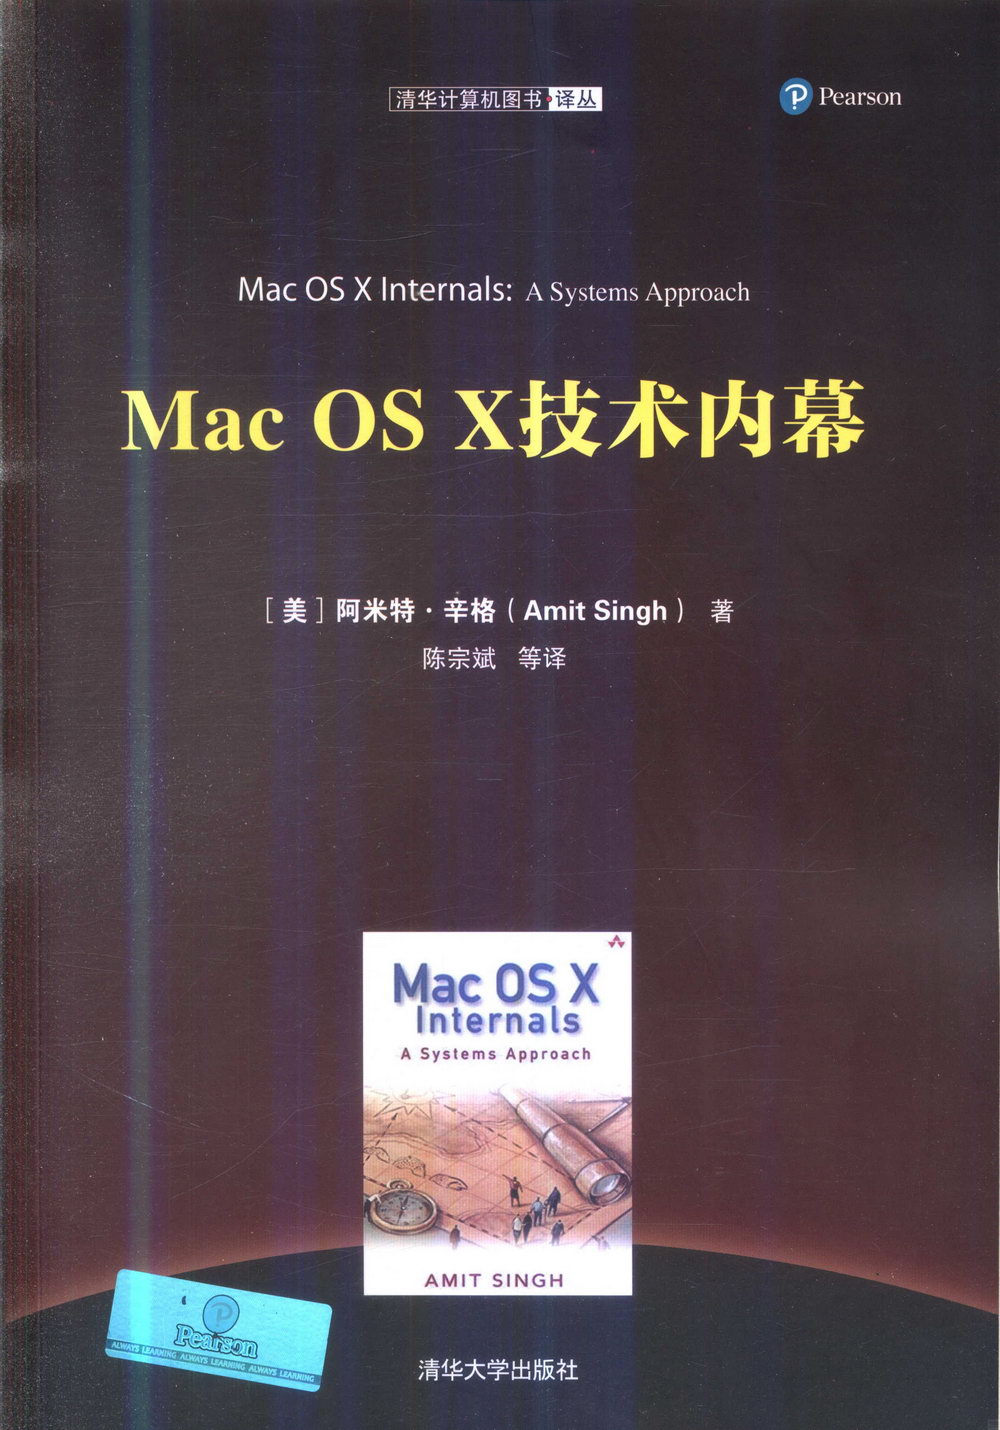 Mac OS X 技術內幕